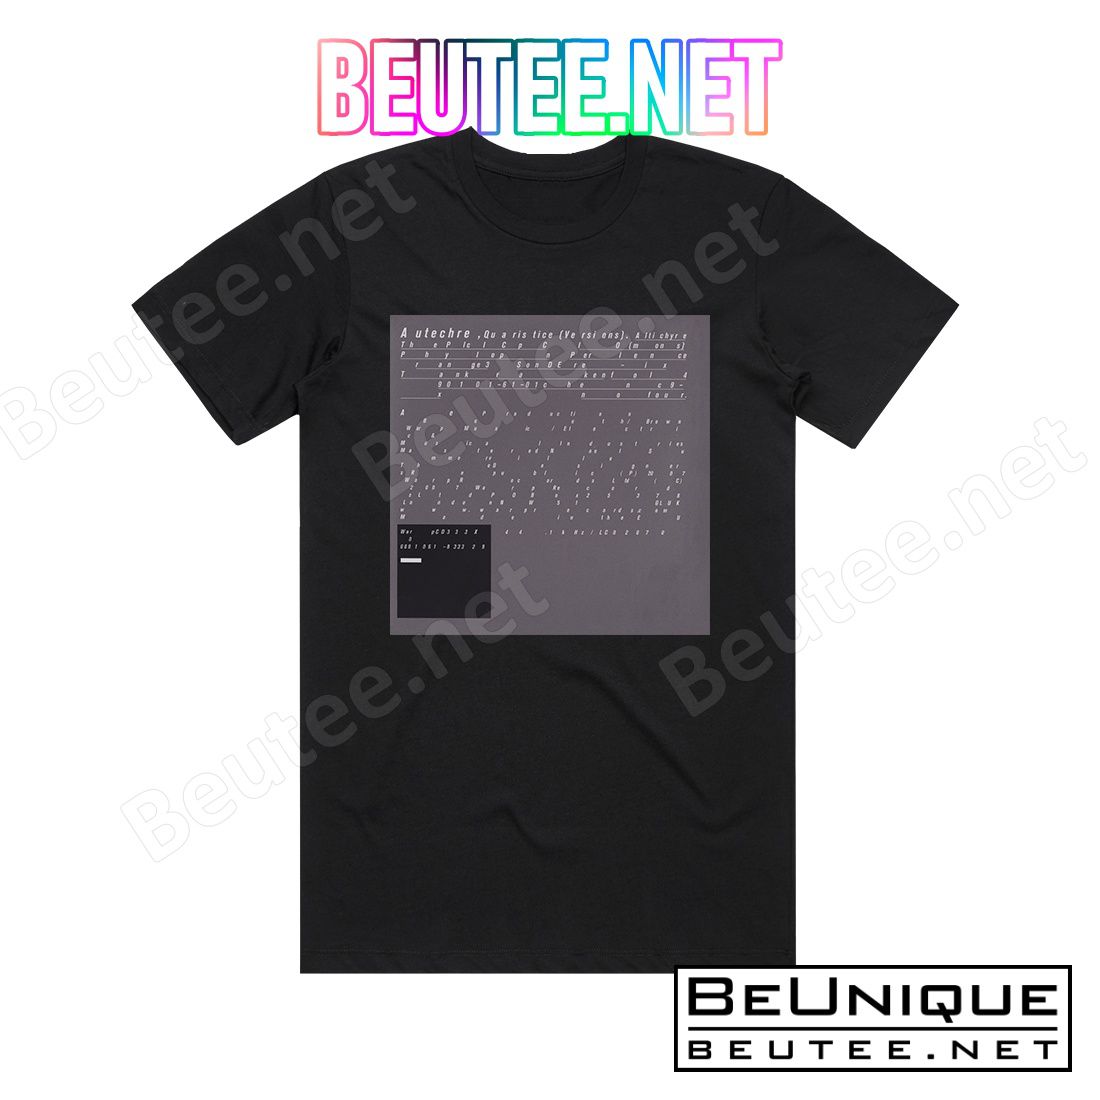 Autechre Quaristice 3 Album Cover T-Shirt